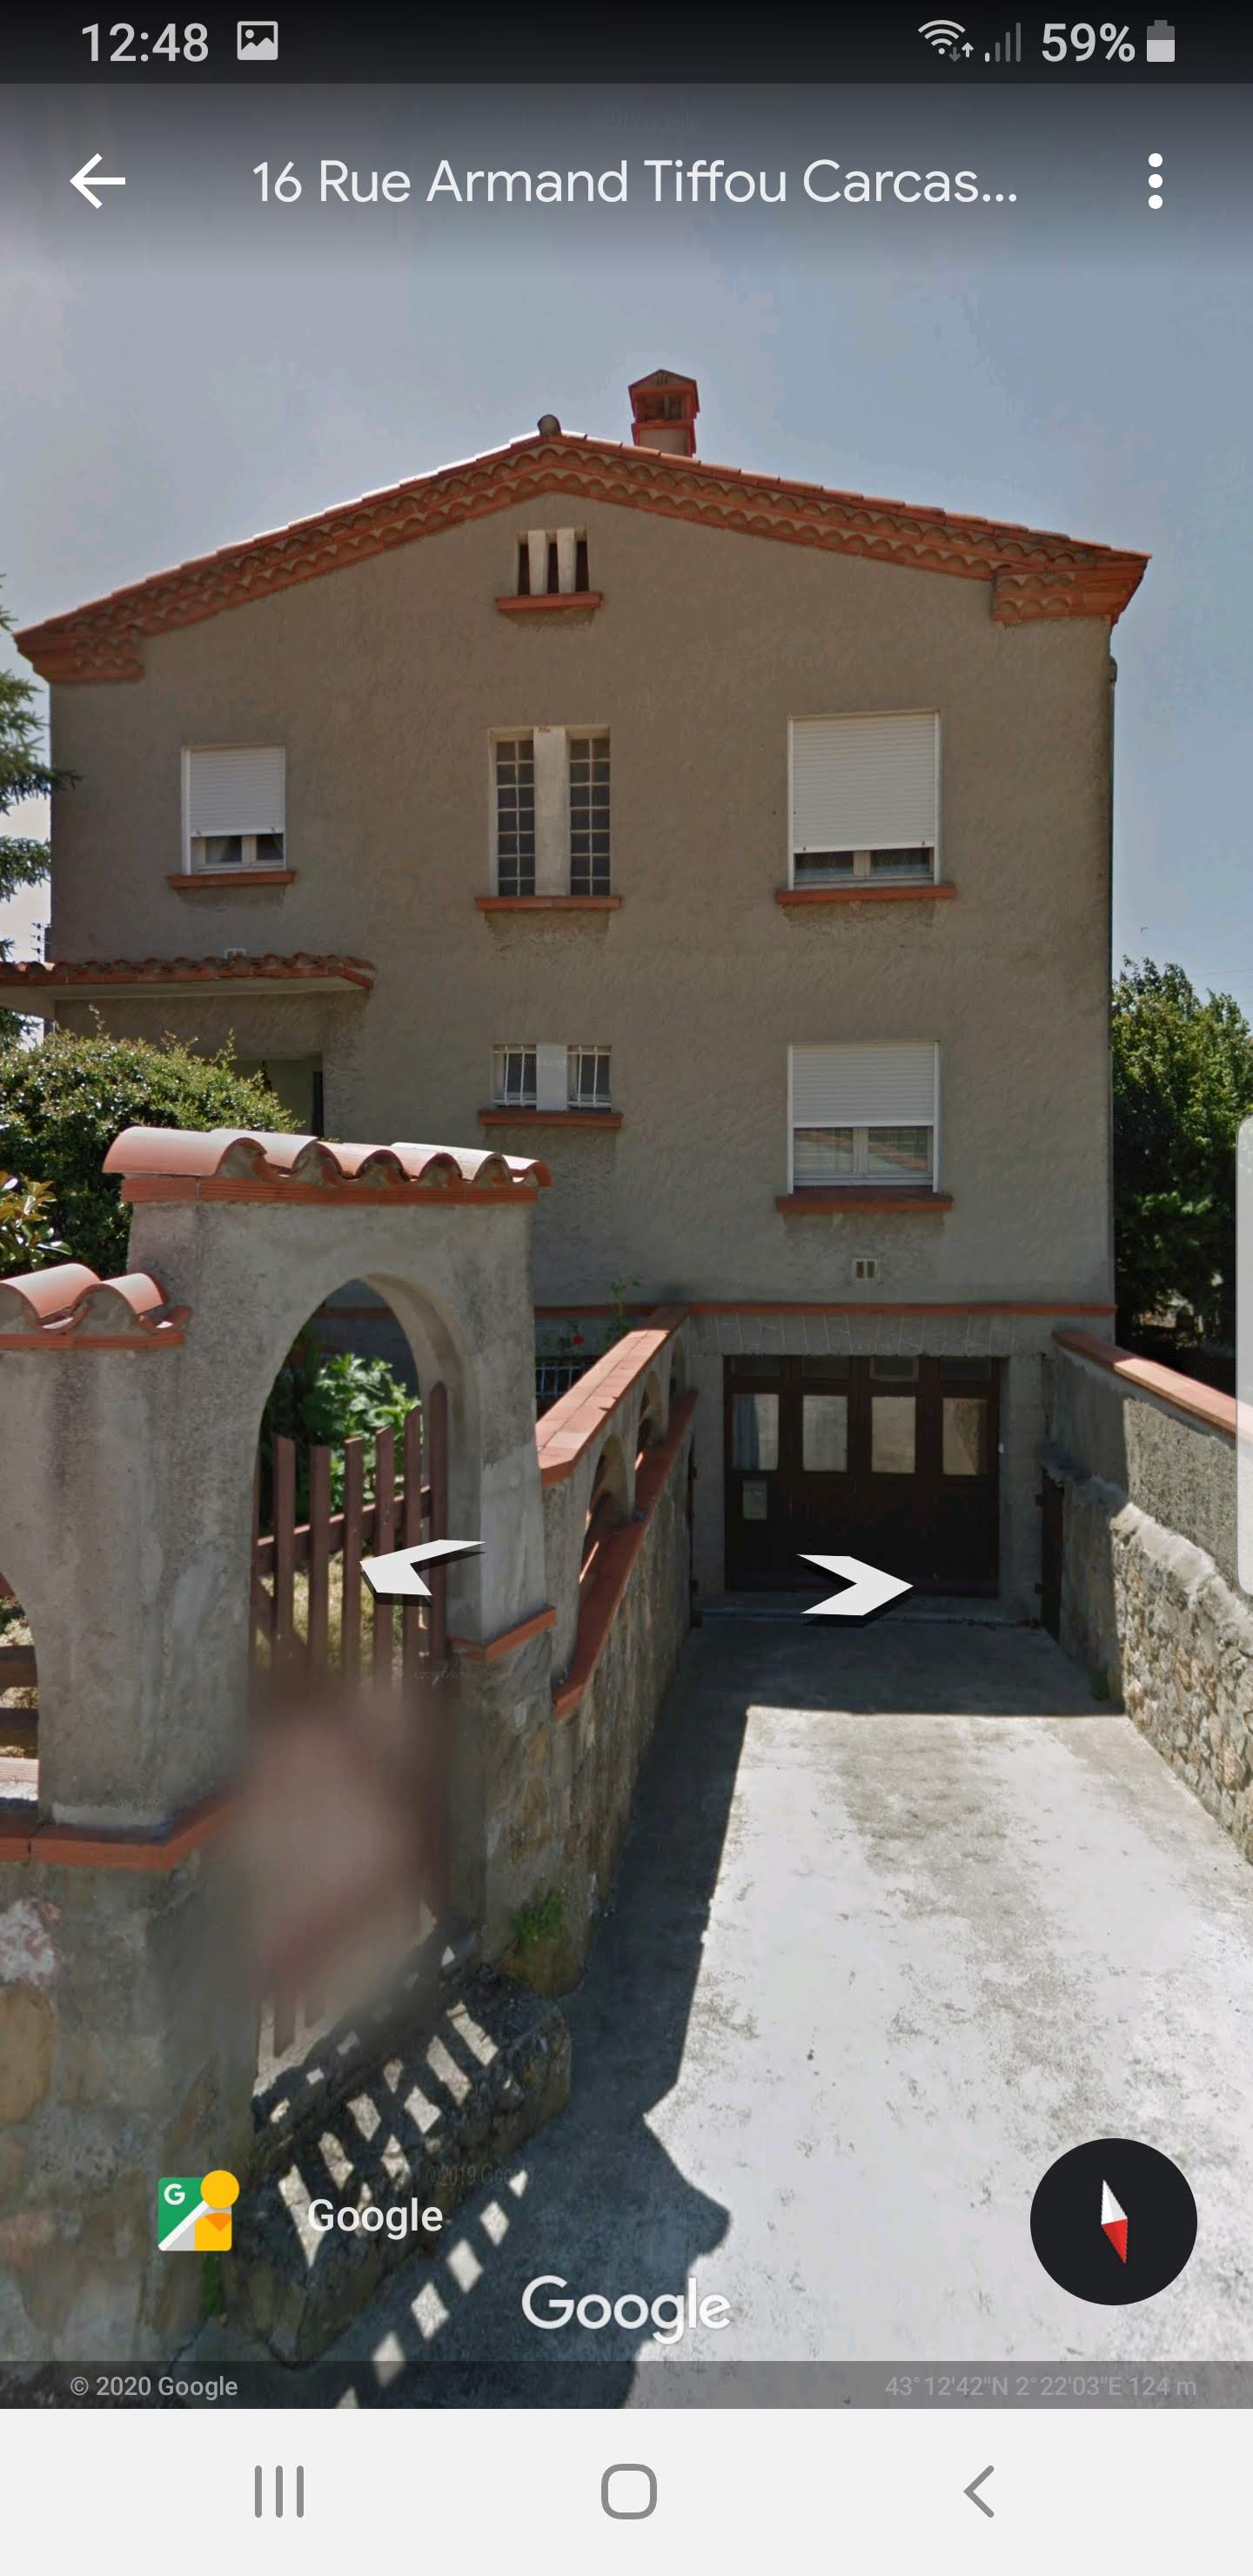 Maison à vendre Carcassonne (Aude 11) 